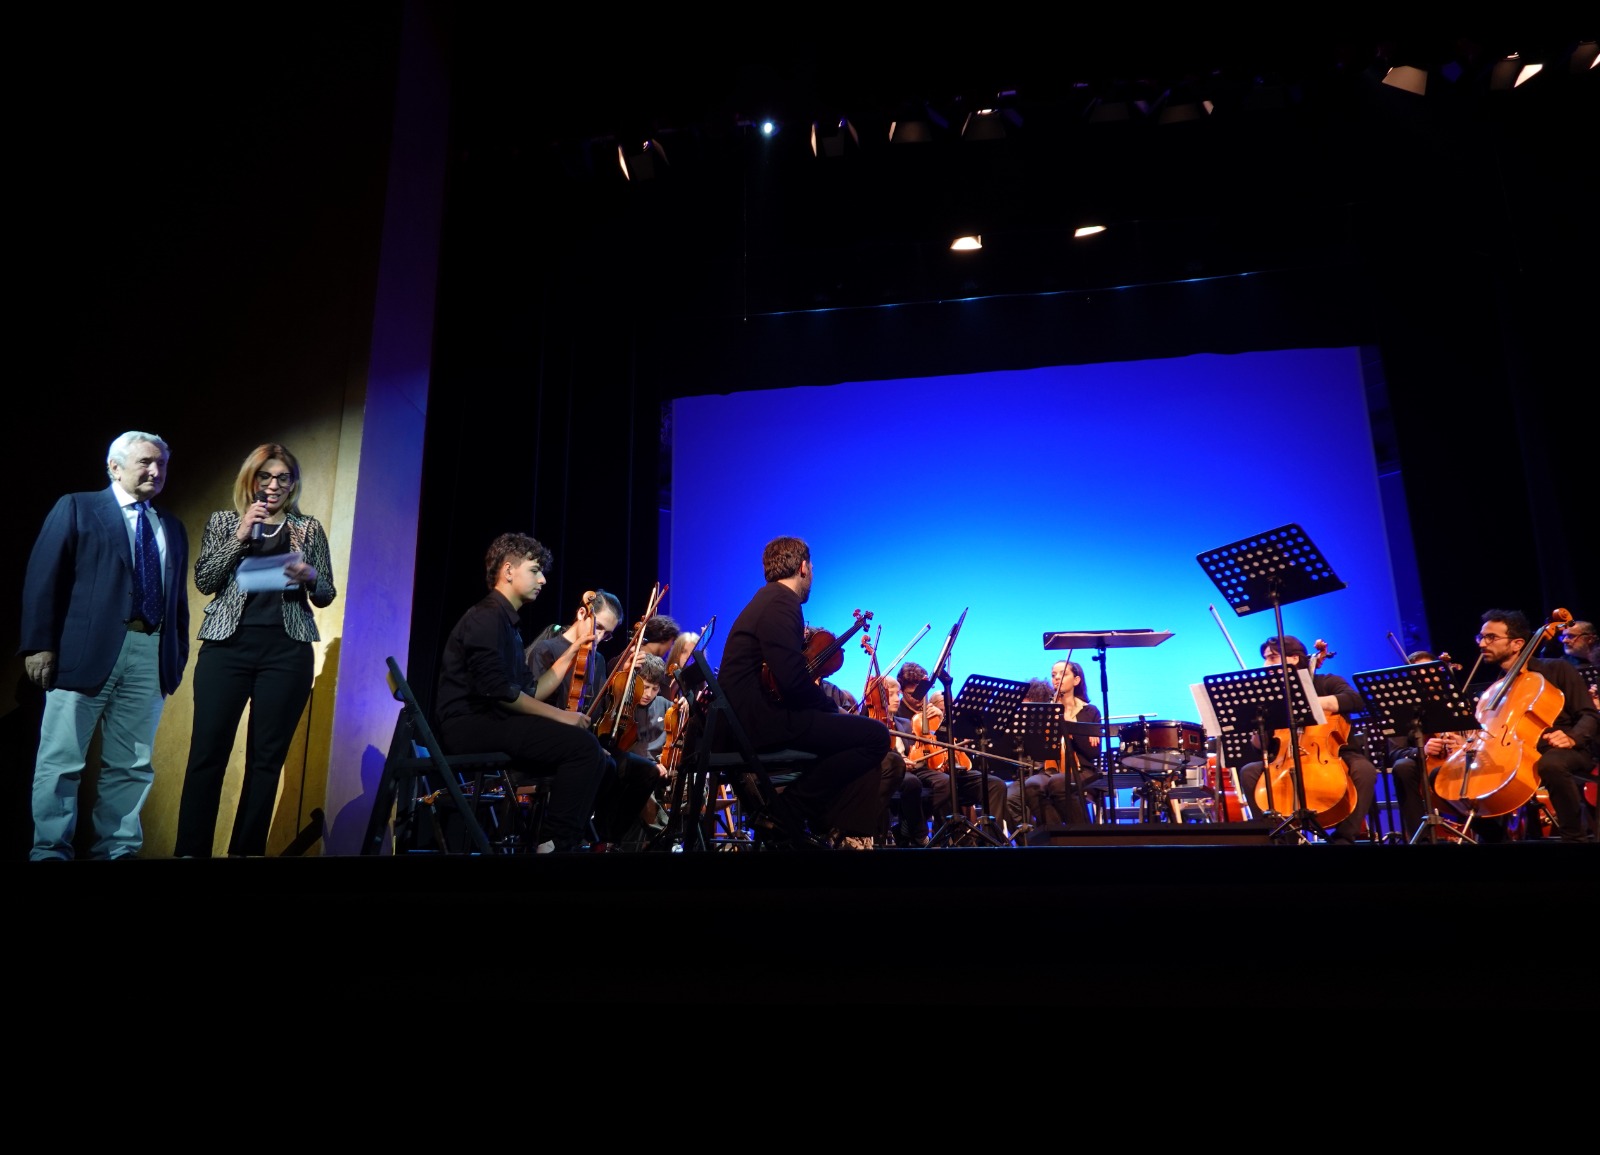 Orquesta Sinfónica de los Barrios Españoles de Nápoles rinde homenaje al Maestro José Antonio Abreu